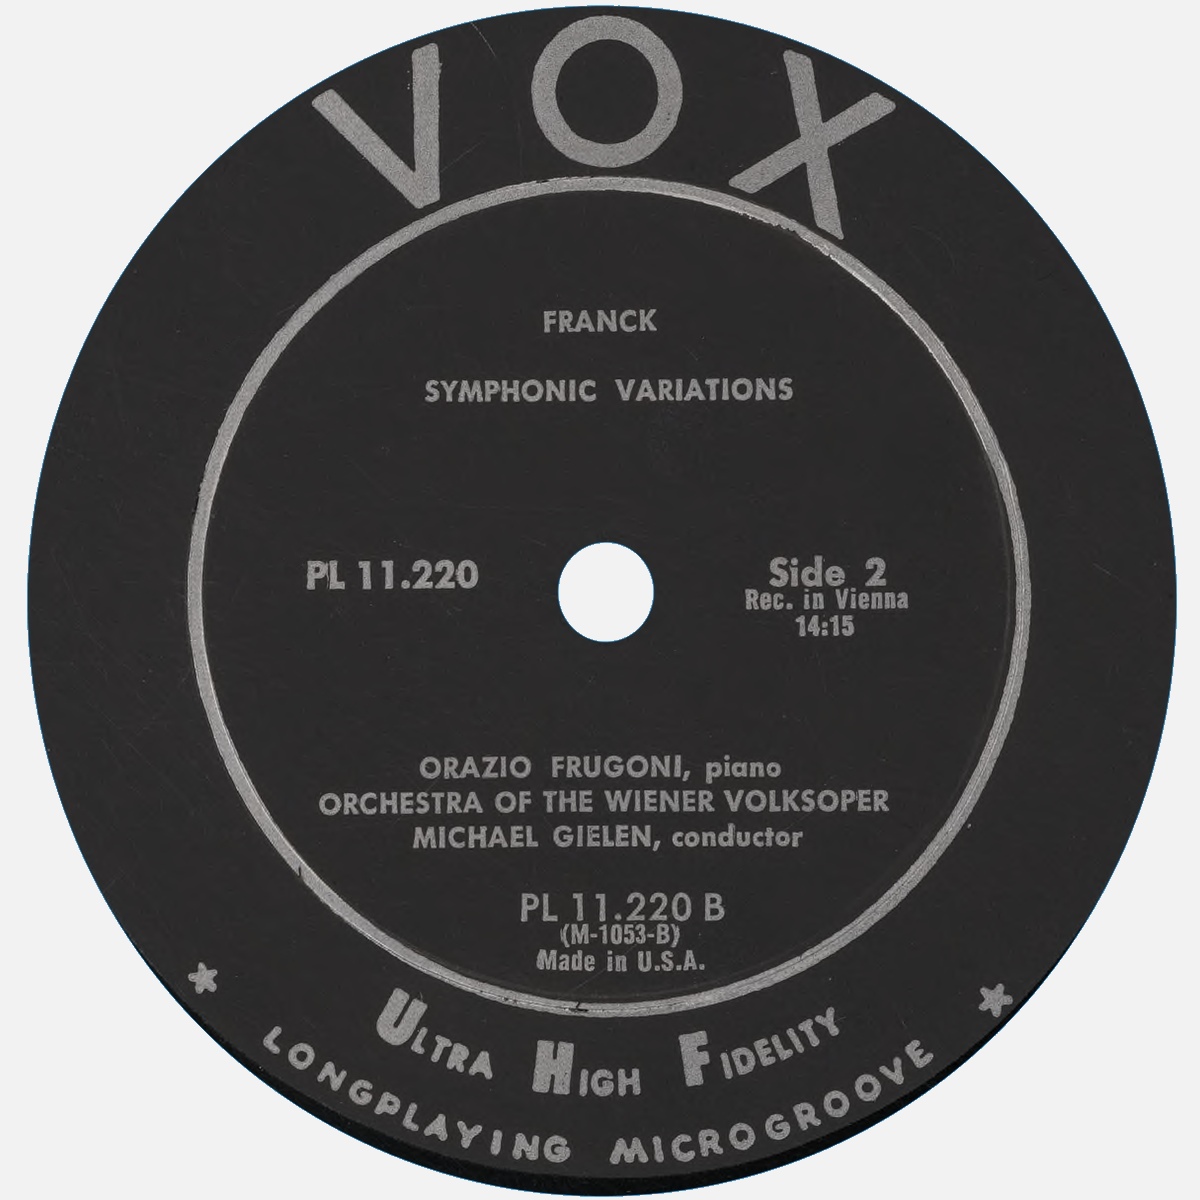 Étiquette verso du disque VOX PL 11.220